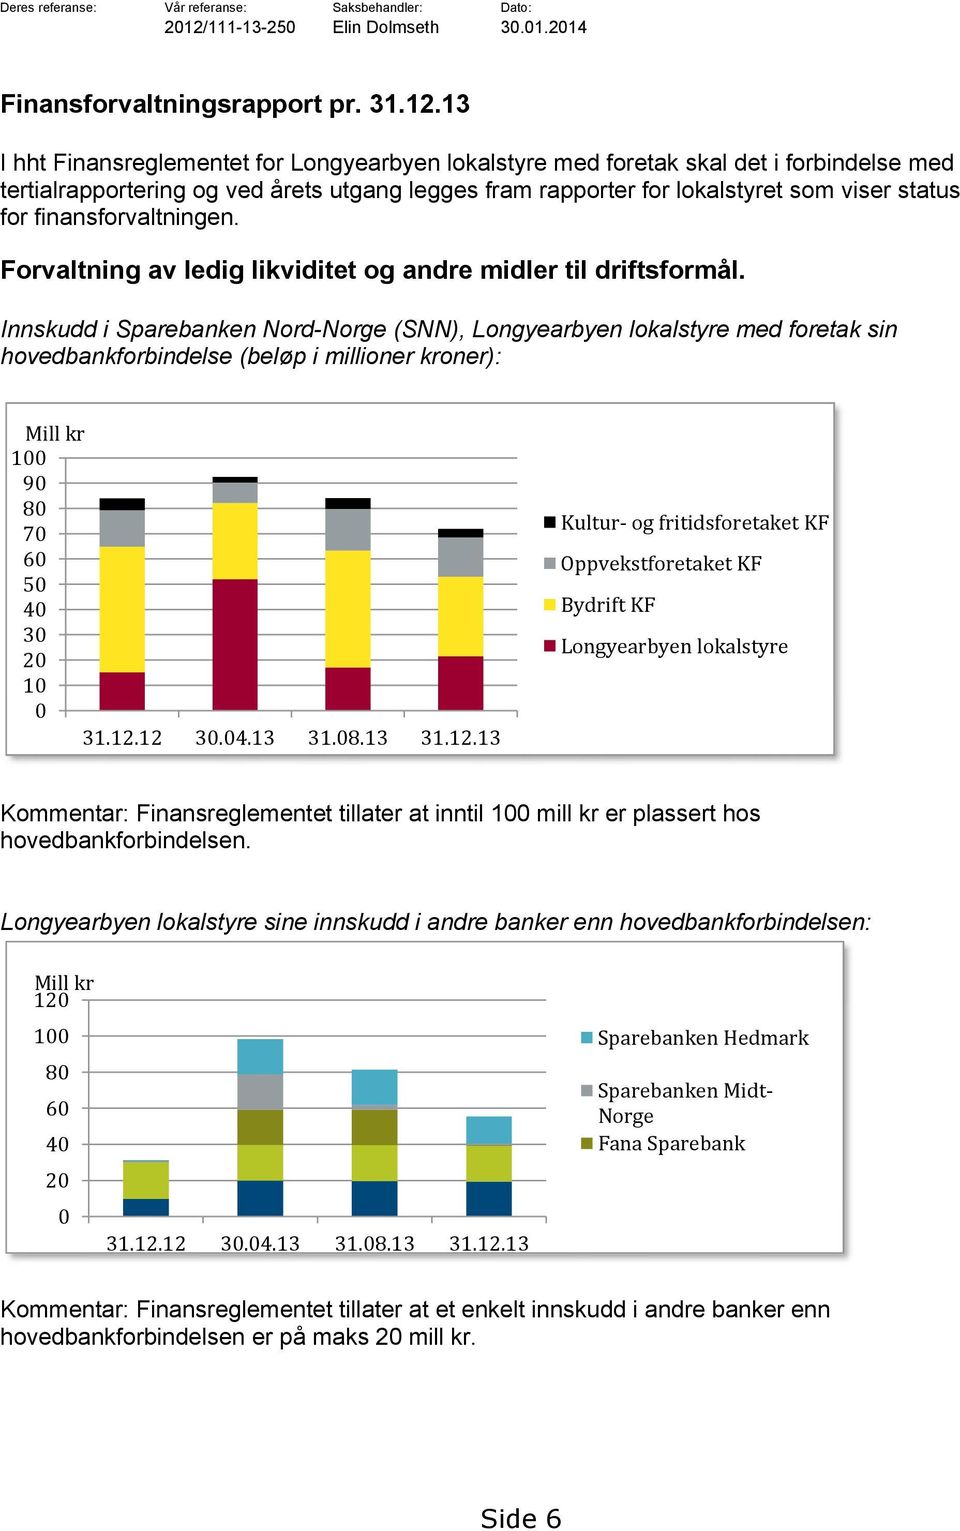 13 I hht Finansreglementet for Longyearbyen lokalstyre med foretak skal det i forbindelse med tertialrapportering og ved årets utgang legges fram rapporter for lokalstyret som viser status for